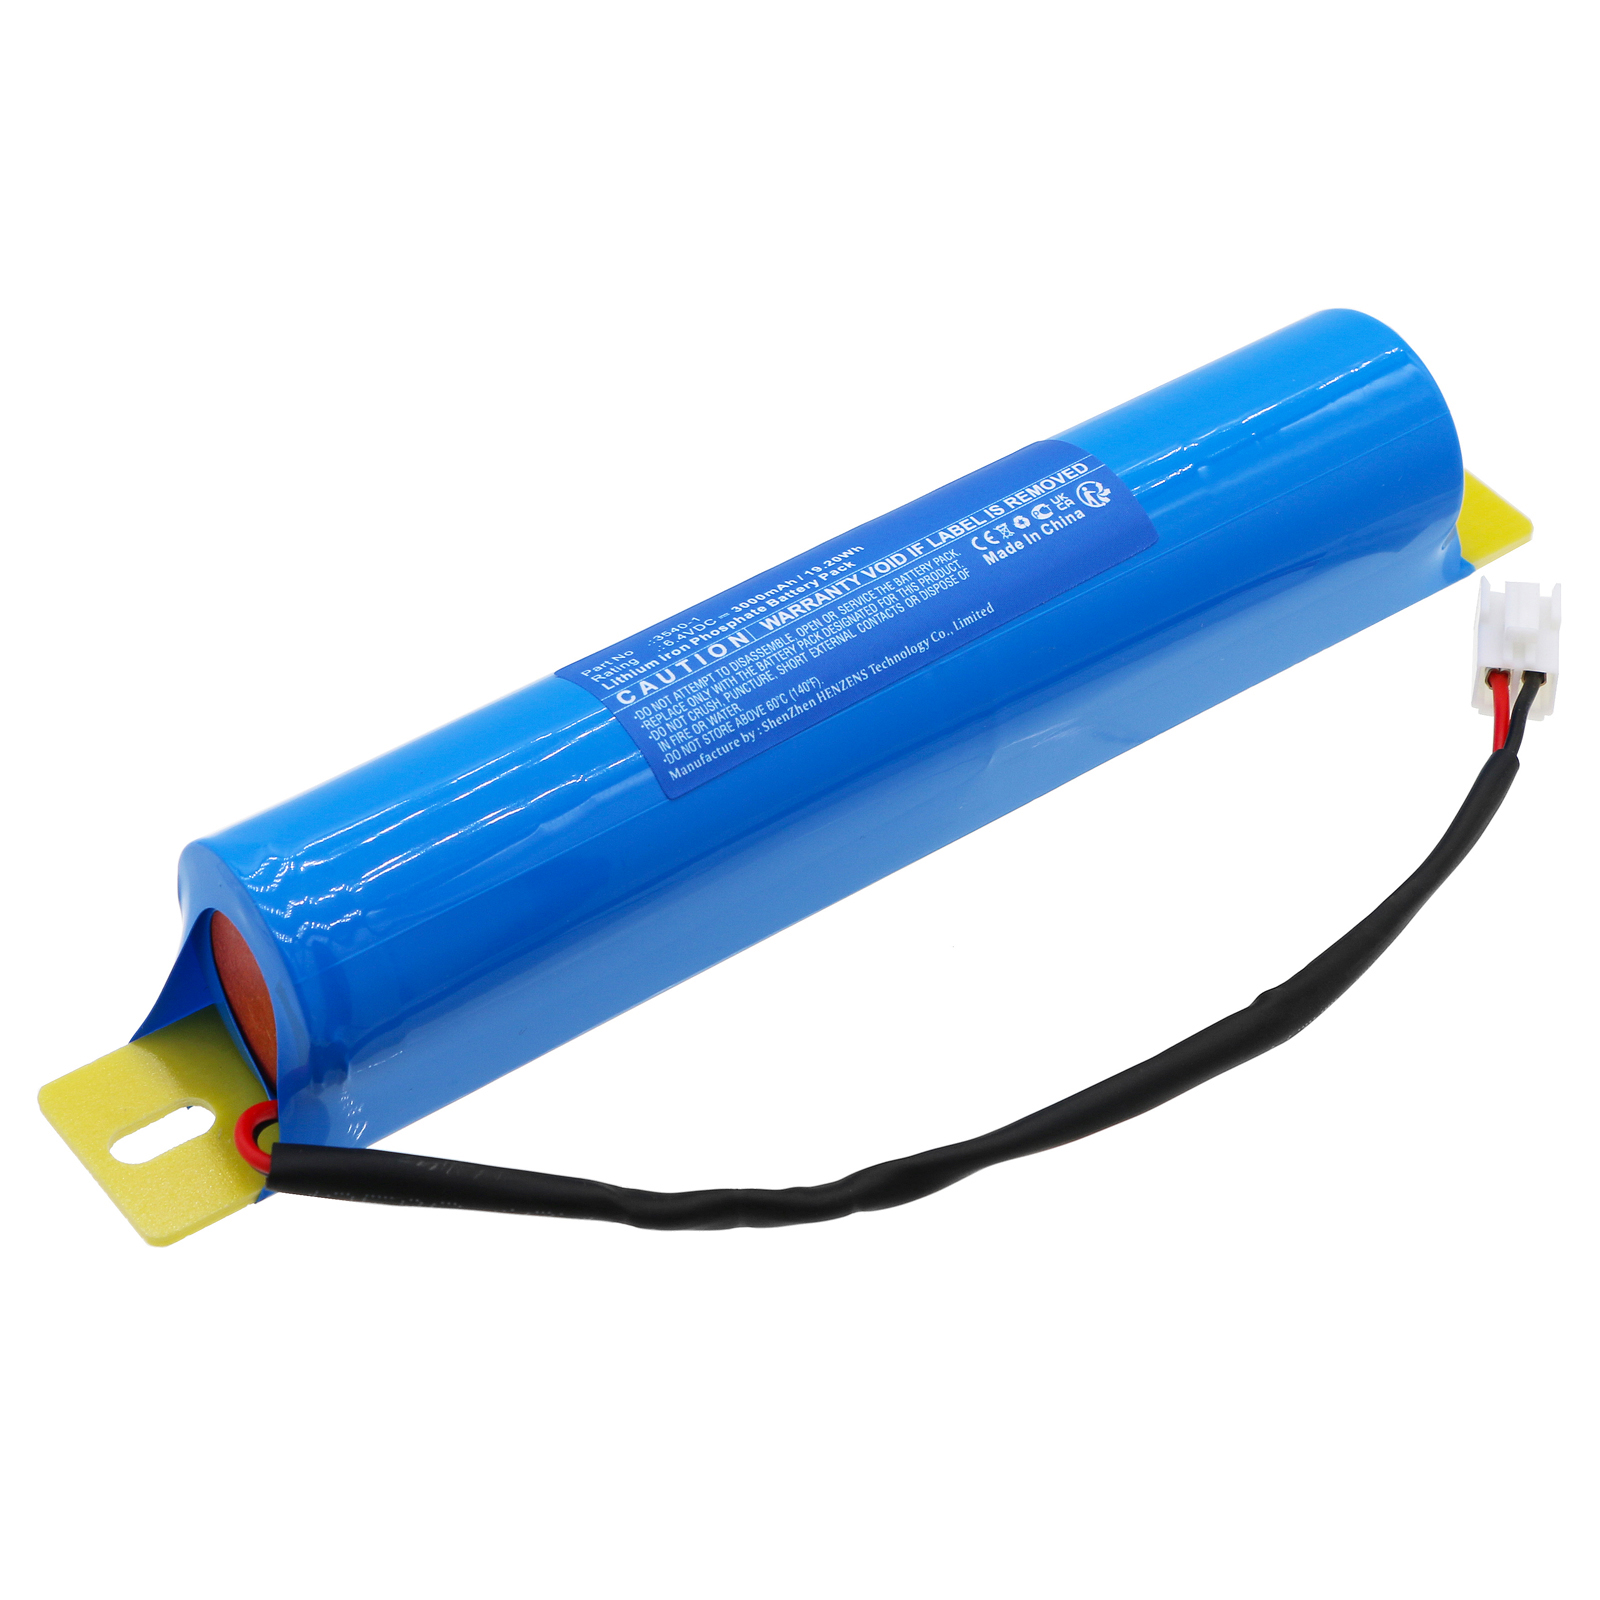 Synergy Digital Emergency Lighting Battery, Compatible with DOTLUX 3540-1 Emergency Lighting Battery (LiFePO4, 6.4V, 3000mAh)